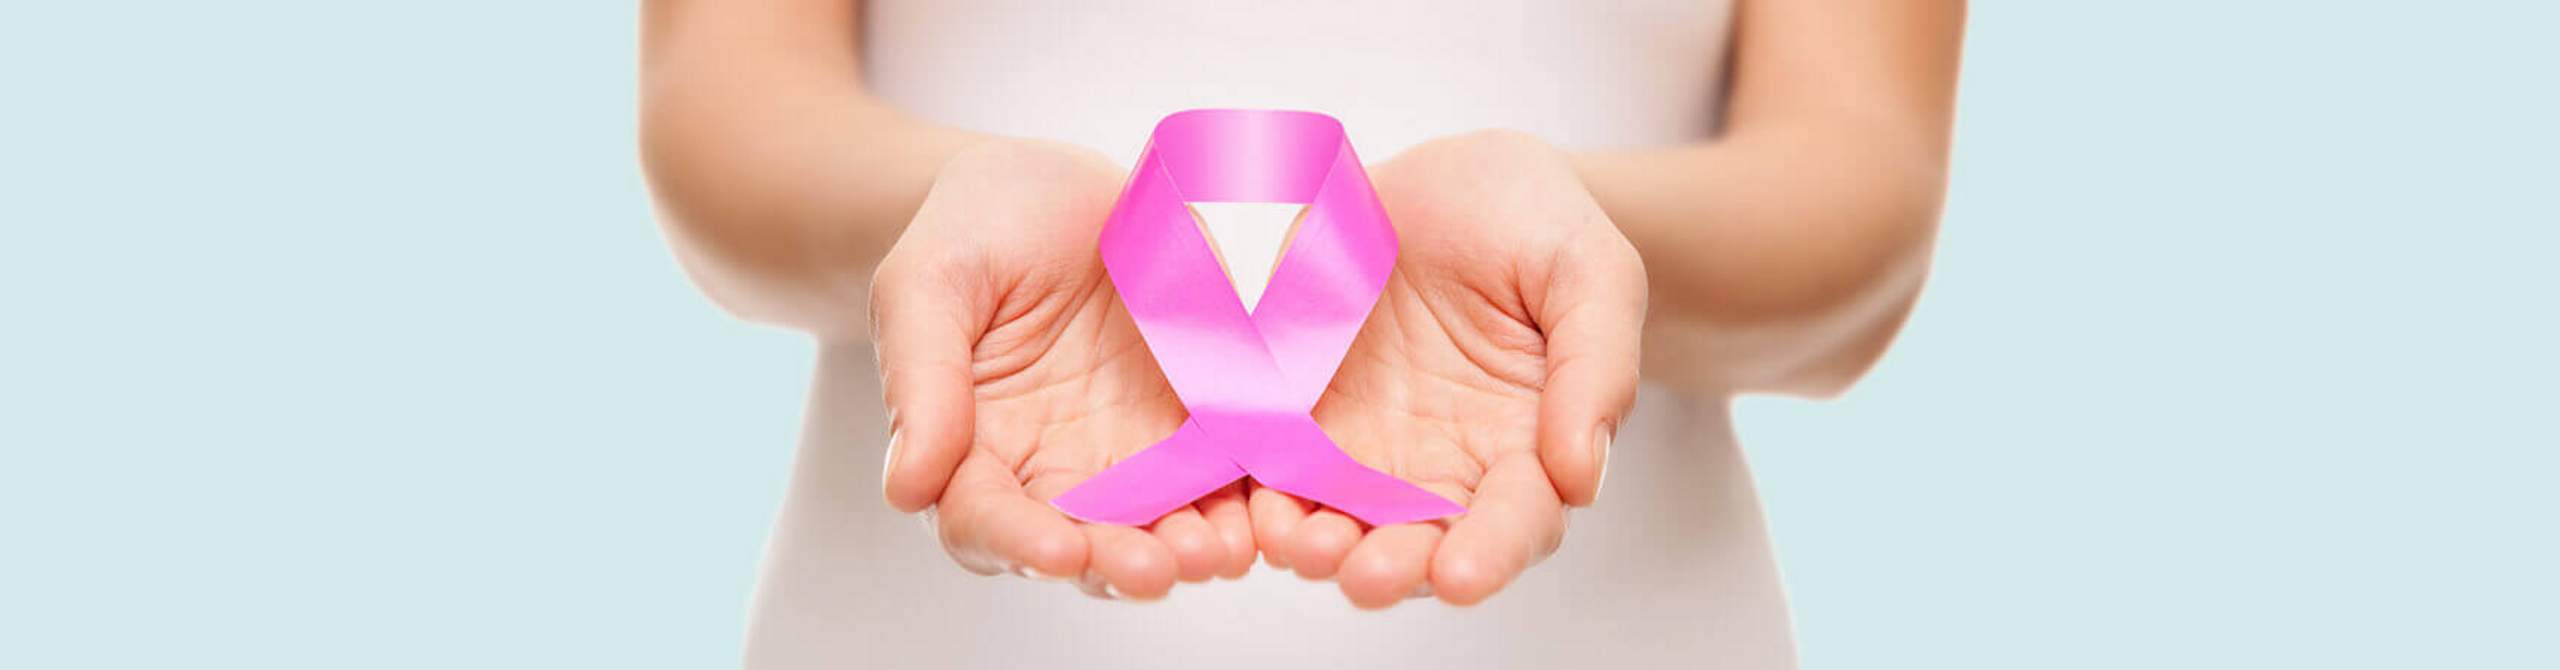 Zwei Hände halten eine pinke Schleife, das Symbol der Brustkrebsfrüherkennung.